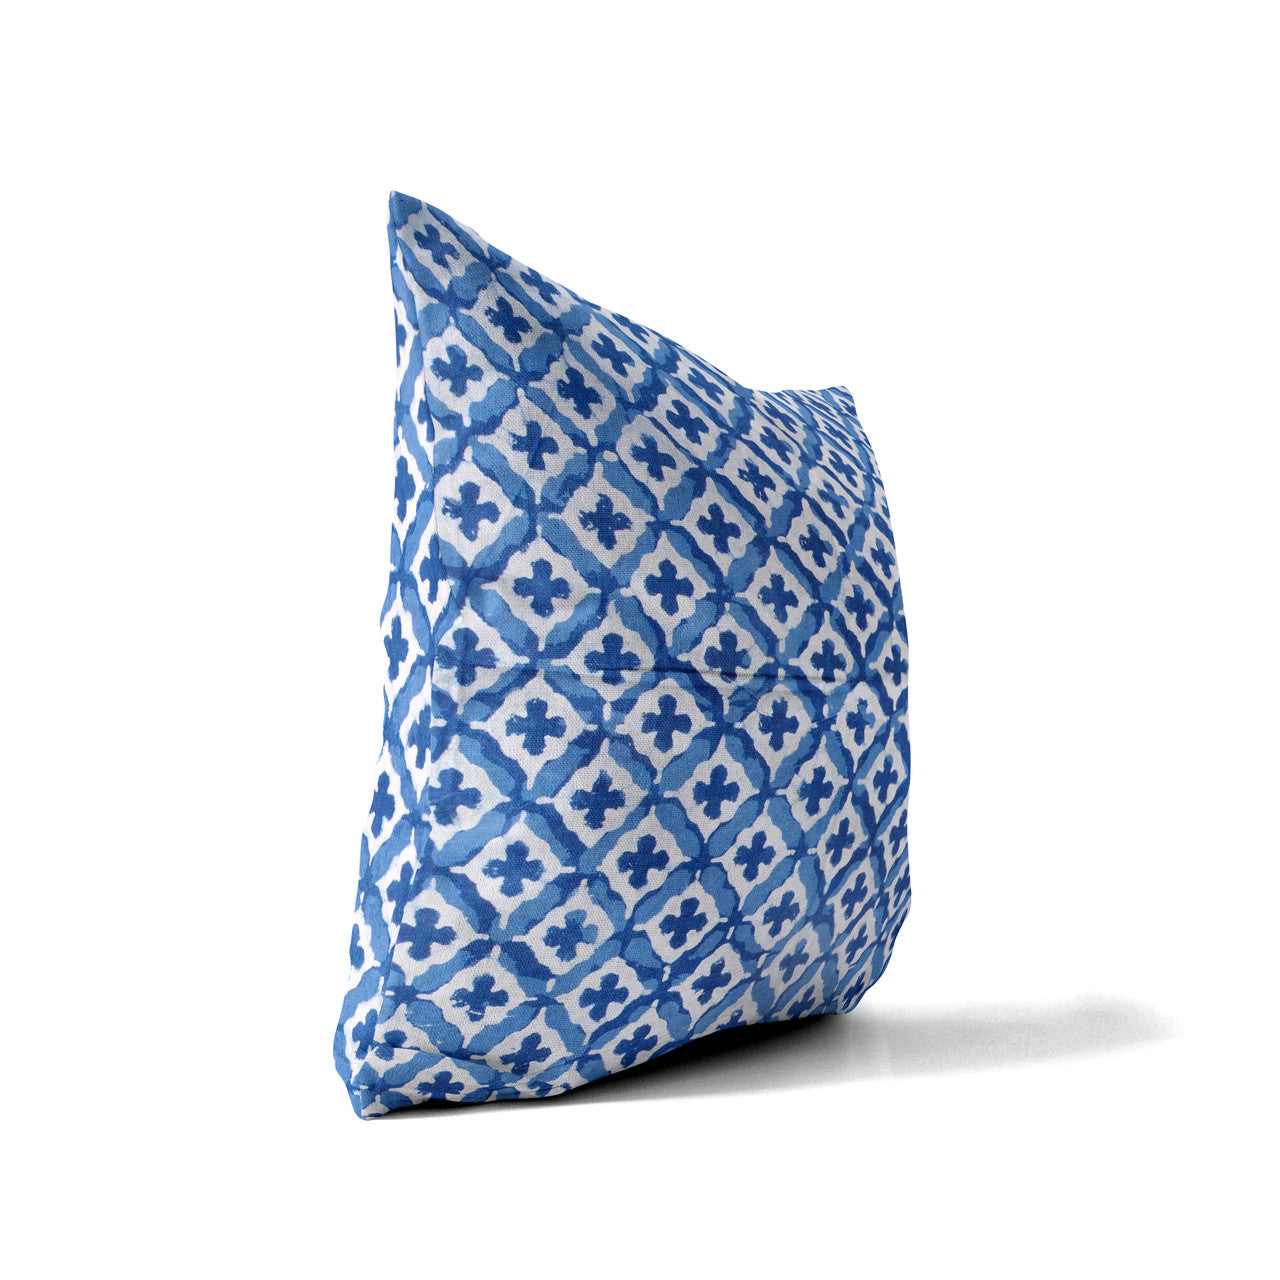 Indigo Moroccan Pillowcase